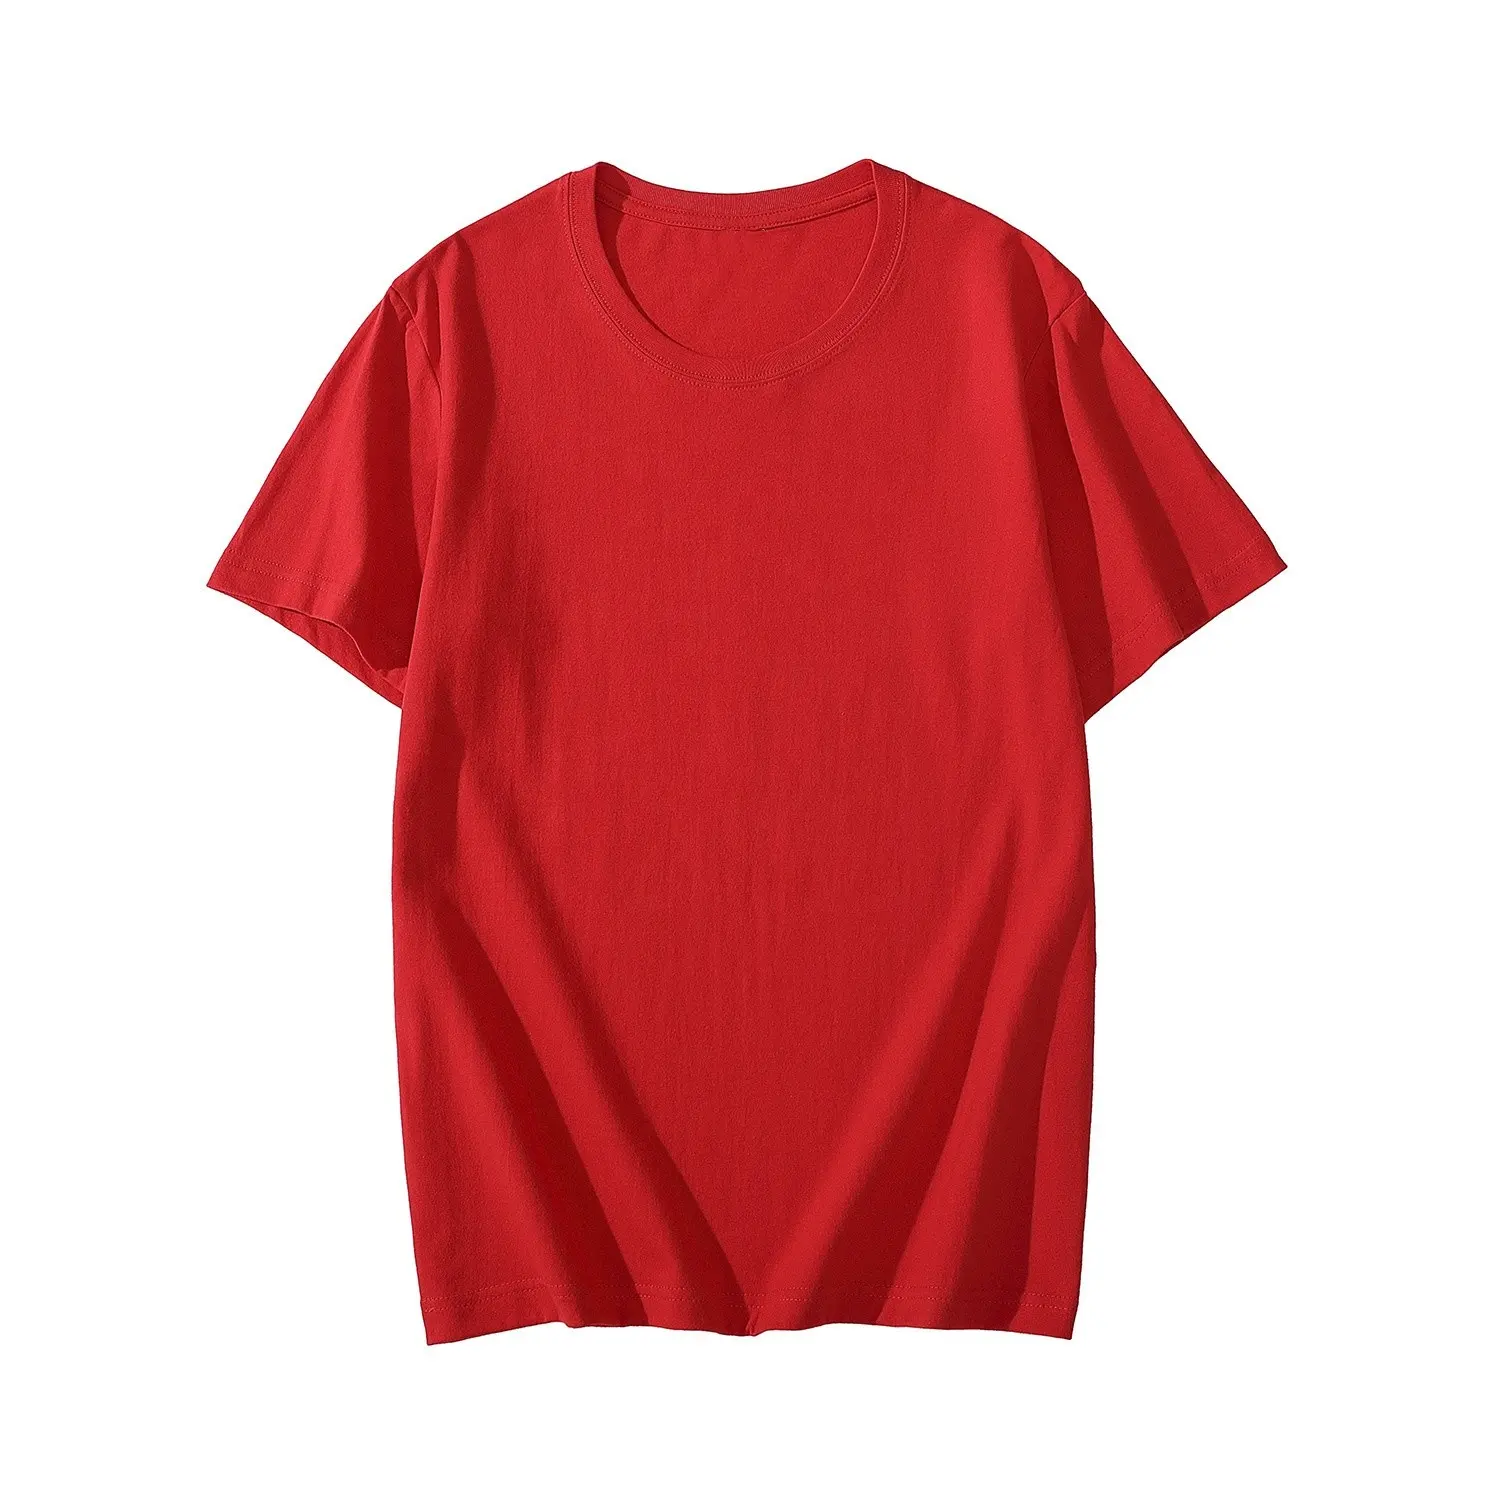 T Shirt Women Casual T-shirt Short Sleeve T shirt Cotton Solid O-neck Tee Tops Women's Fashion T Shirts Brand Clothing